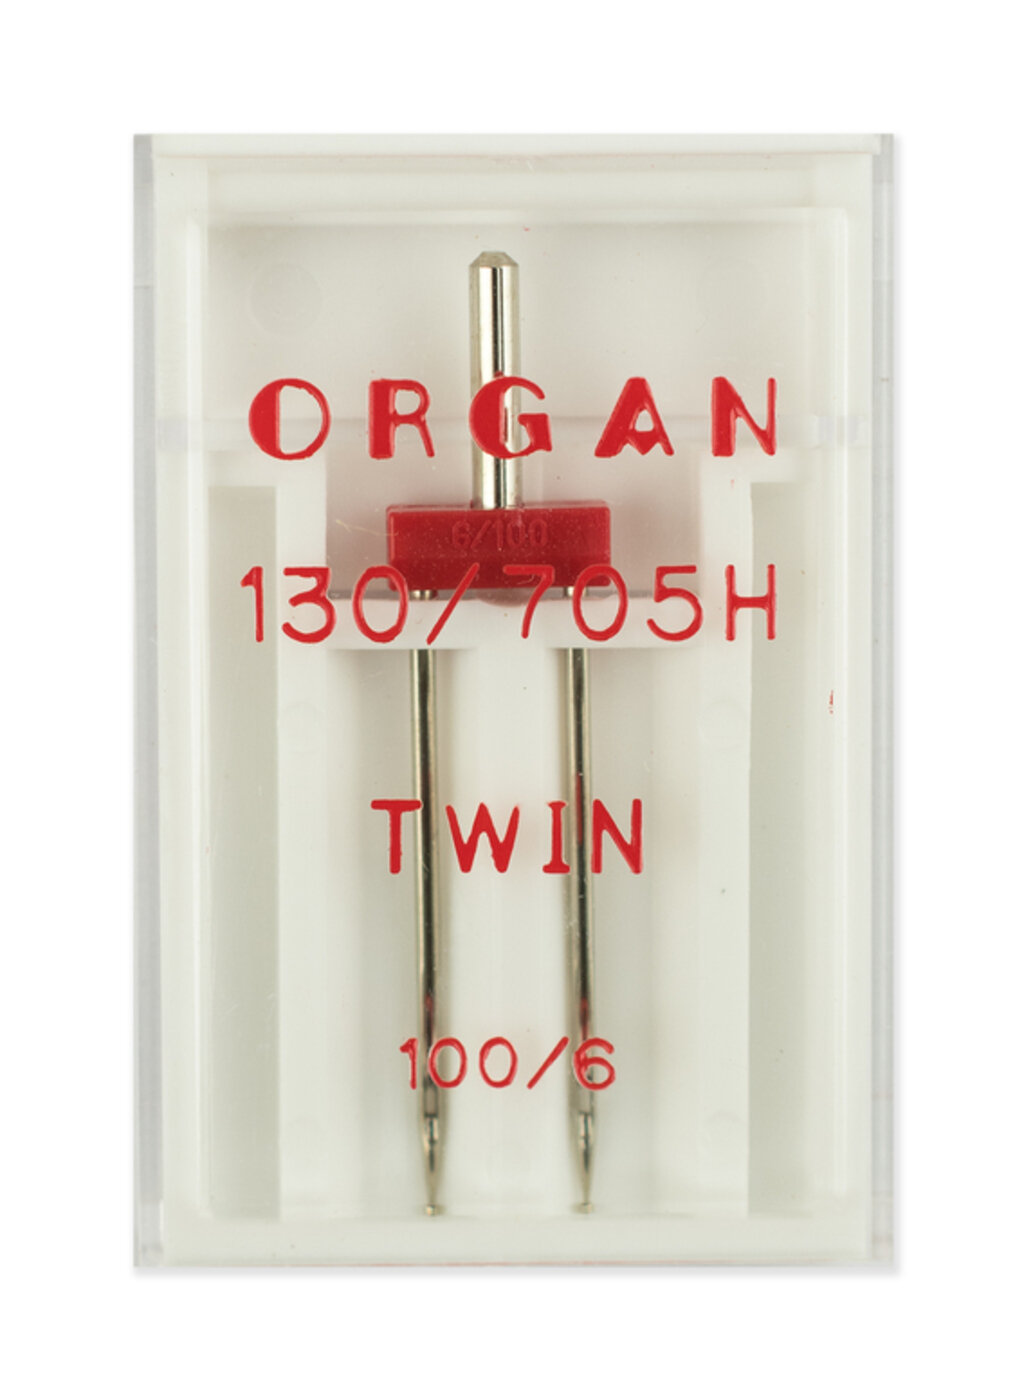 Иглы двойные стандарт №100/6.0, Organ